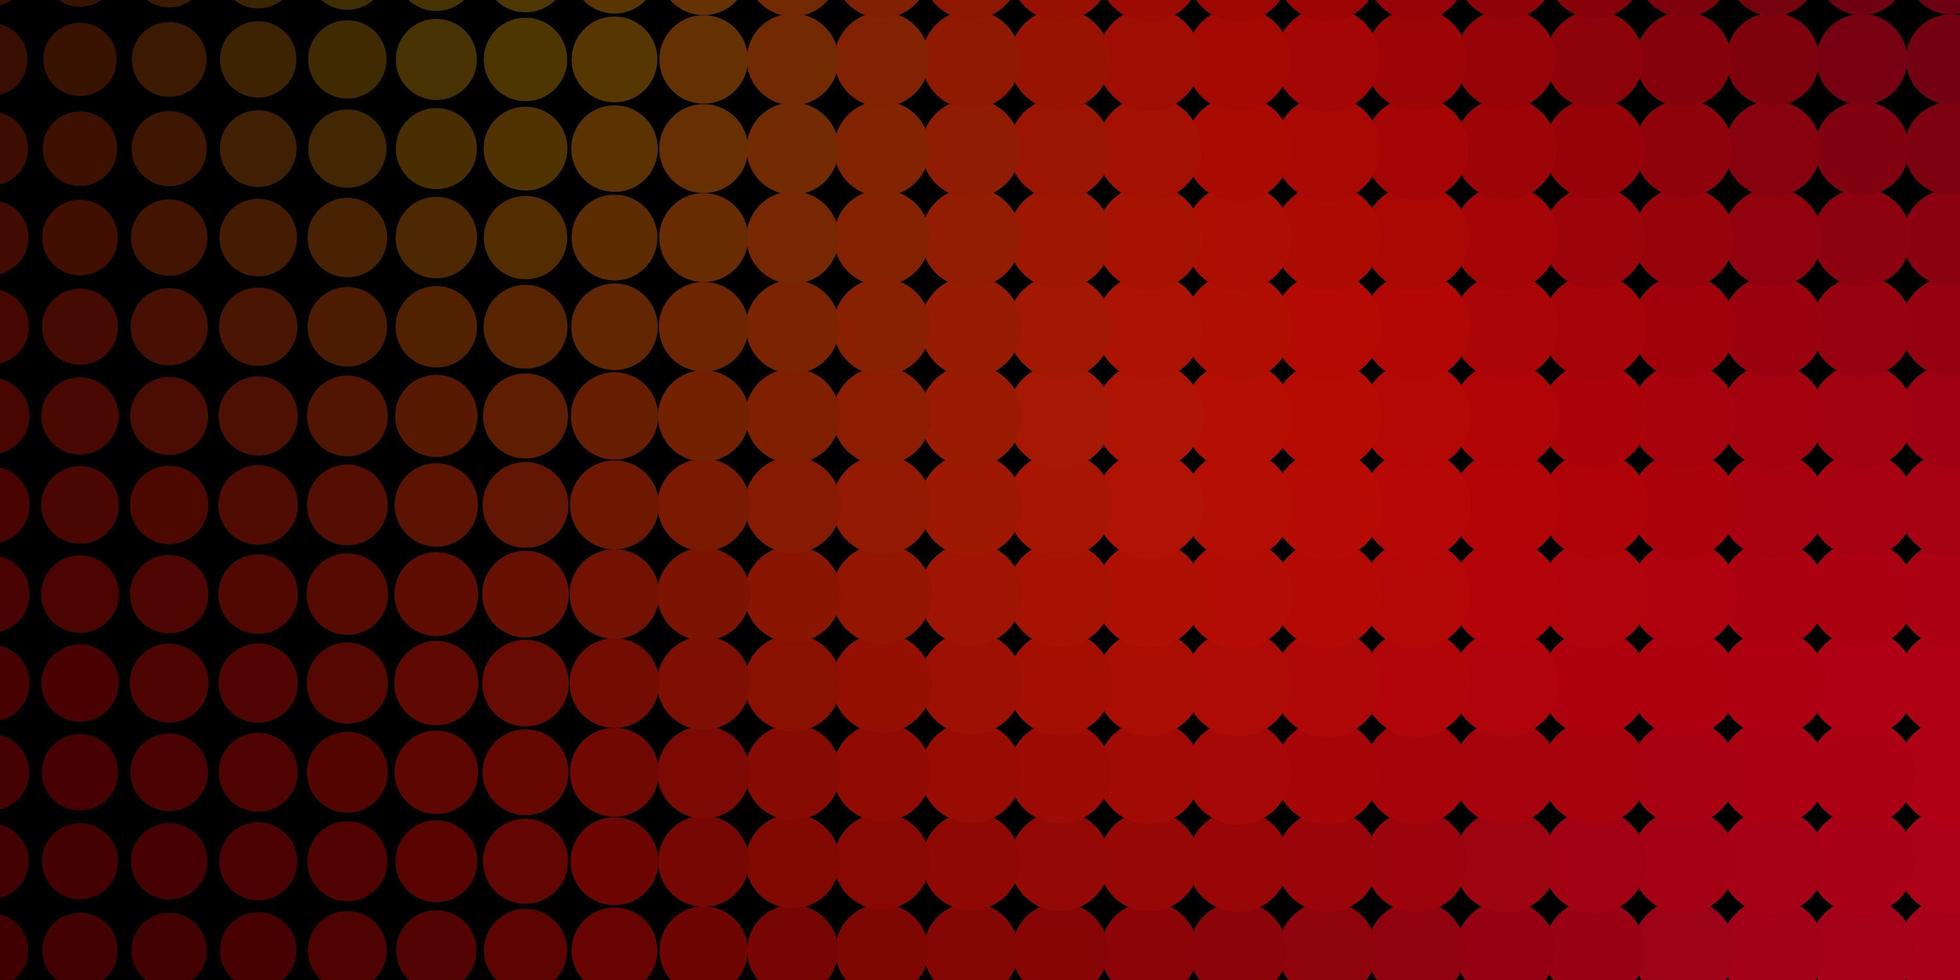 donkergroen rood vector achtergrond met stippen illustratie met set van glanzende kleurrijke abstracte bollen patroon voor boekjes folders